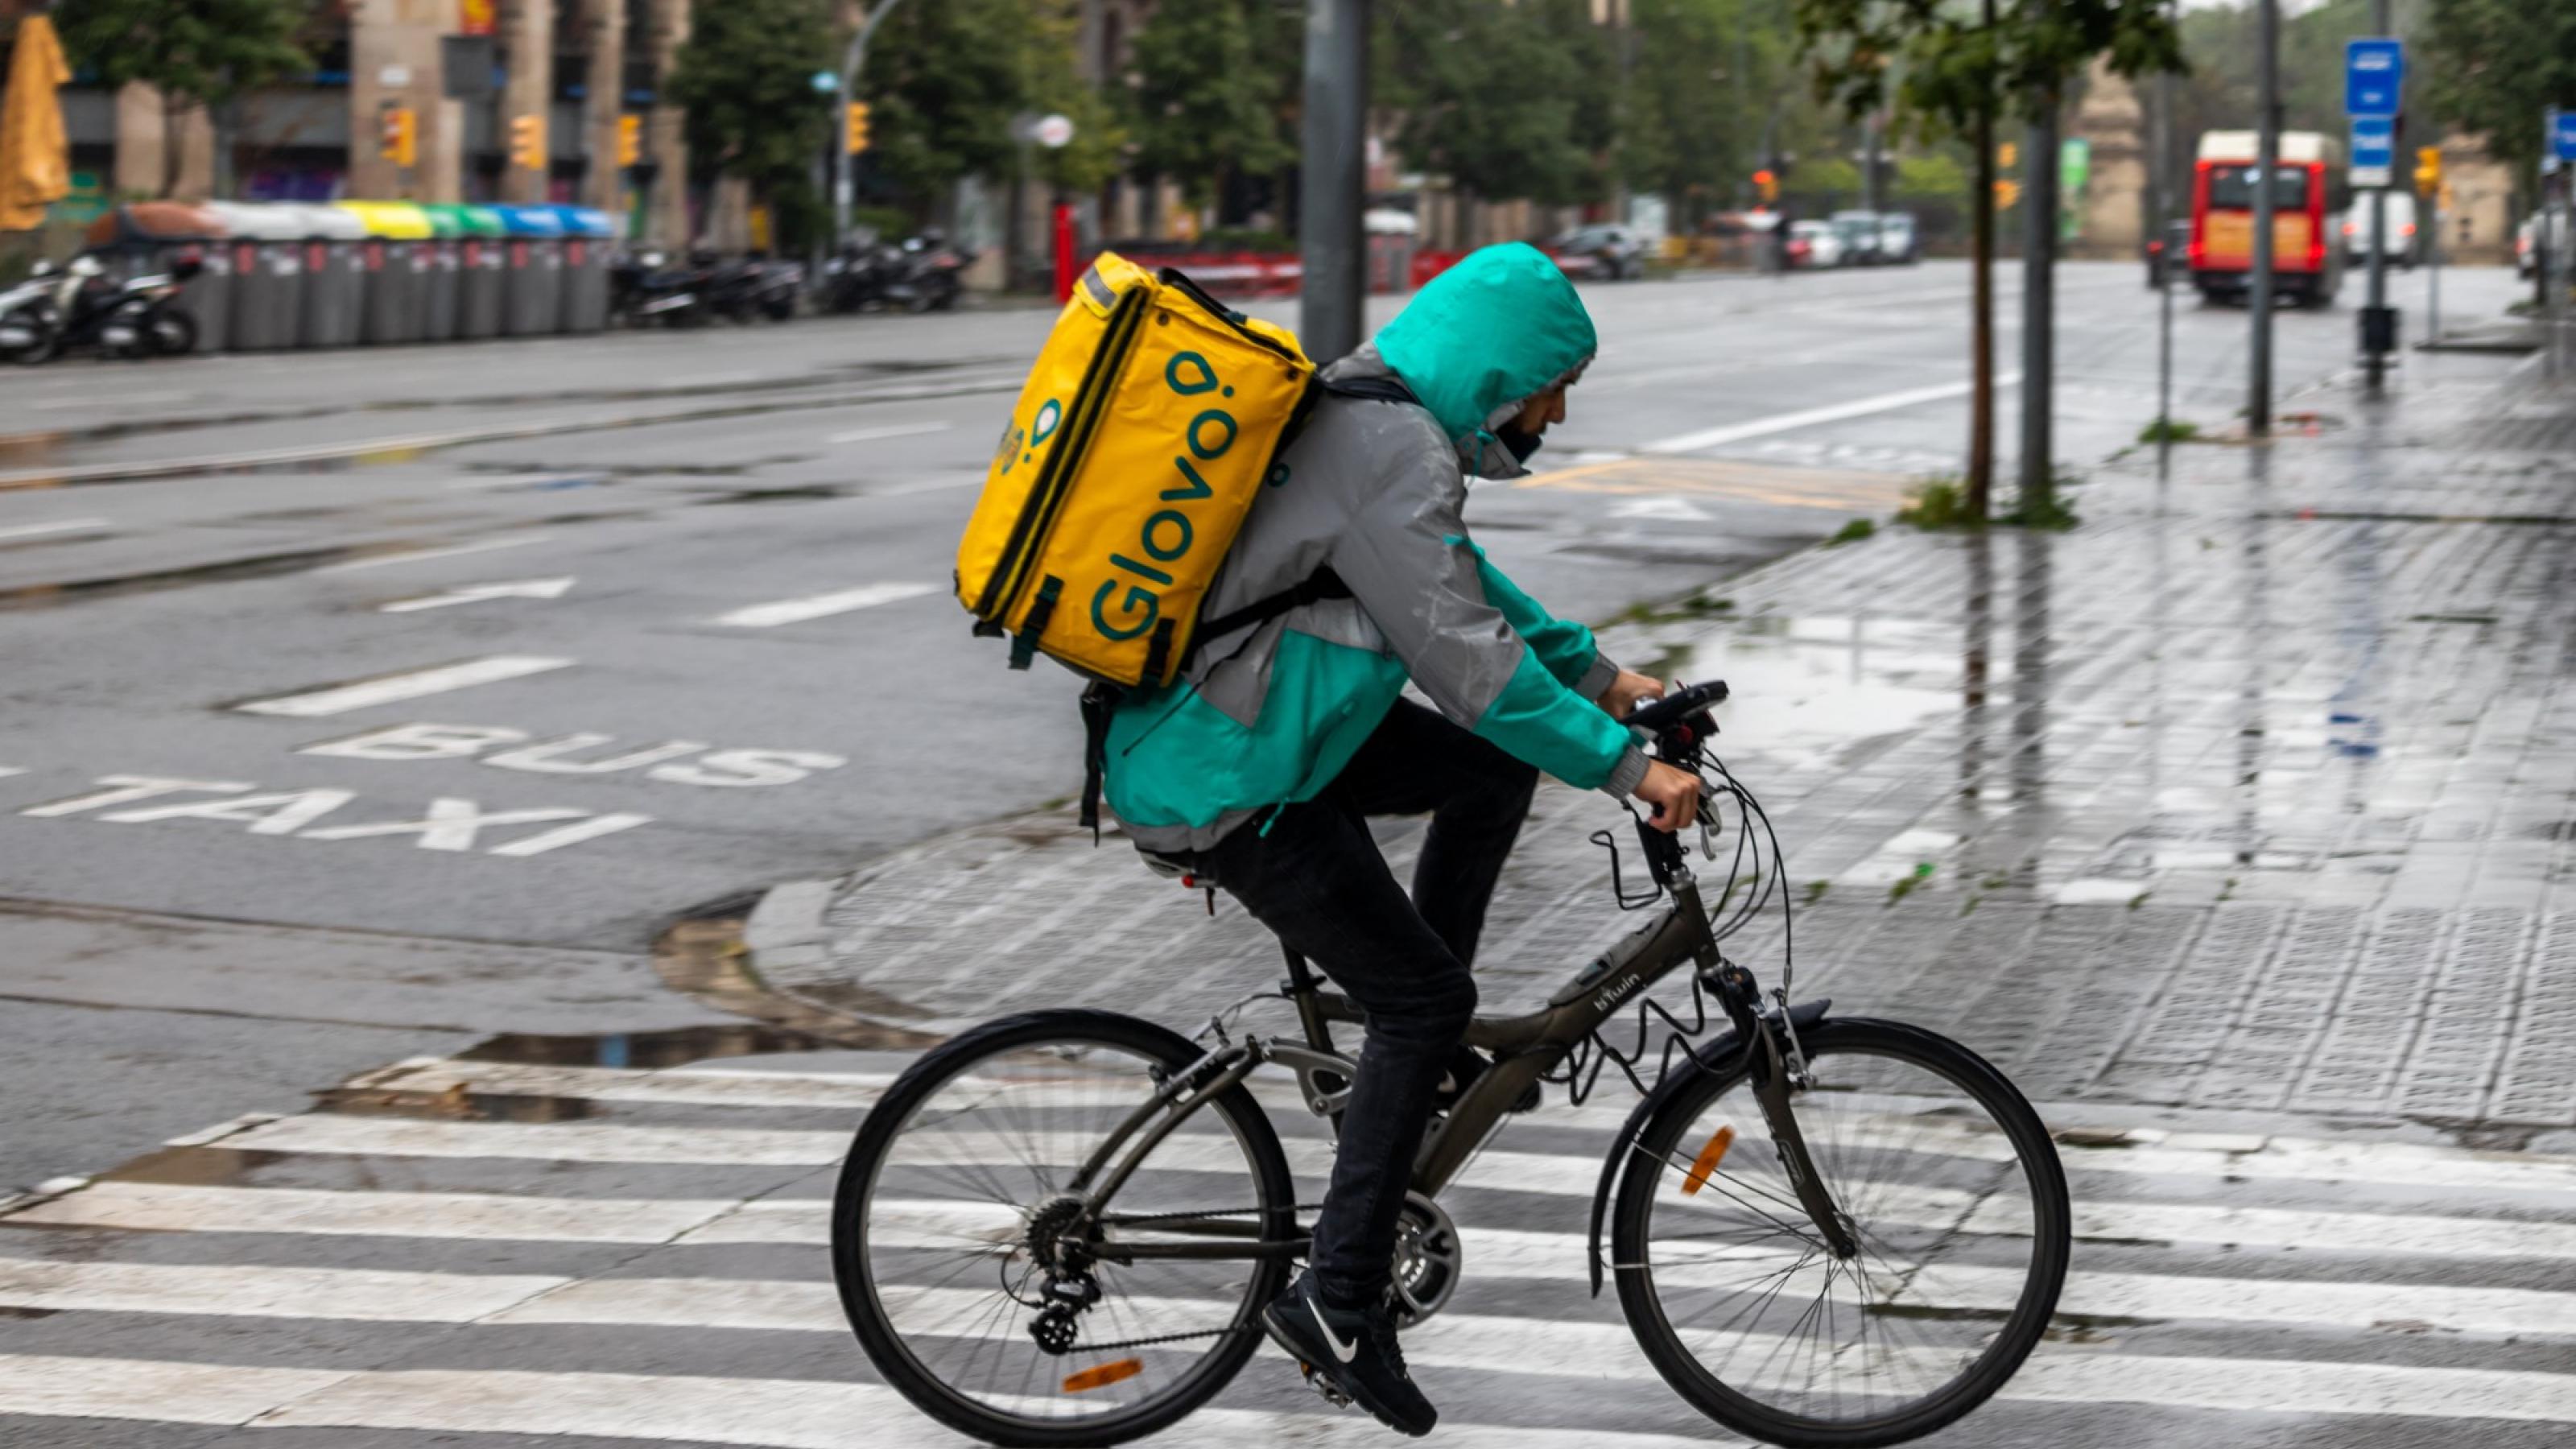 Ein Lieferbote fährt in einer spanischen Stadt über eine regennasse Straße, auf dem Rücken eine der charakteristischen quadratischen Lieferboxen.